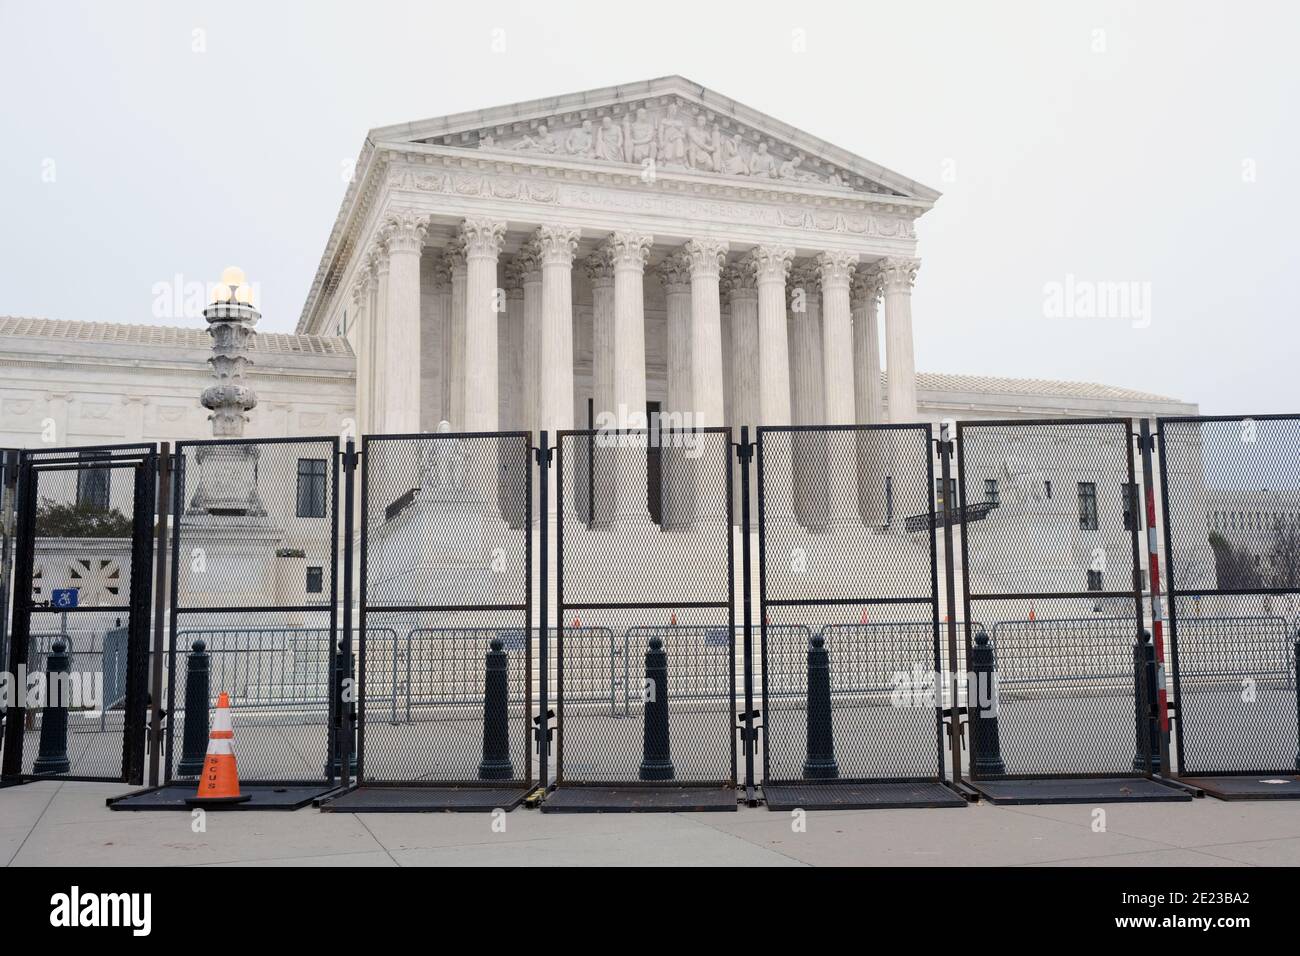 Um den Capitol Hill herum werden Zäune und Barrikaden errichtet, nachdem Präsident Trump-Anhänger gegen das Wahlergebnis das Capitol Building gestürmt haben. Stockfoto